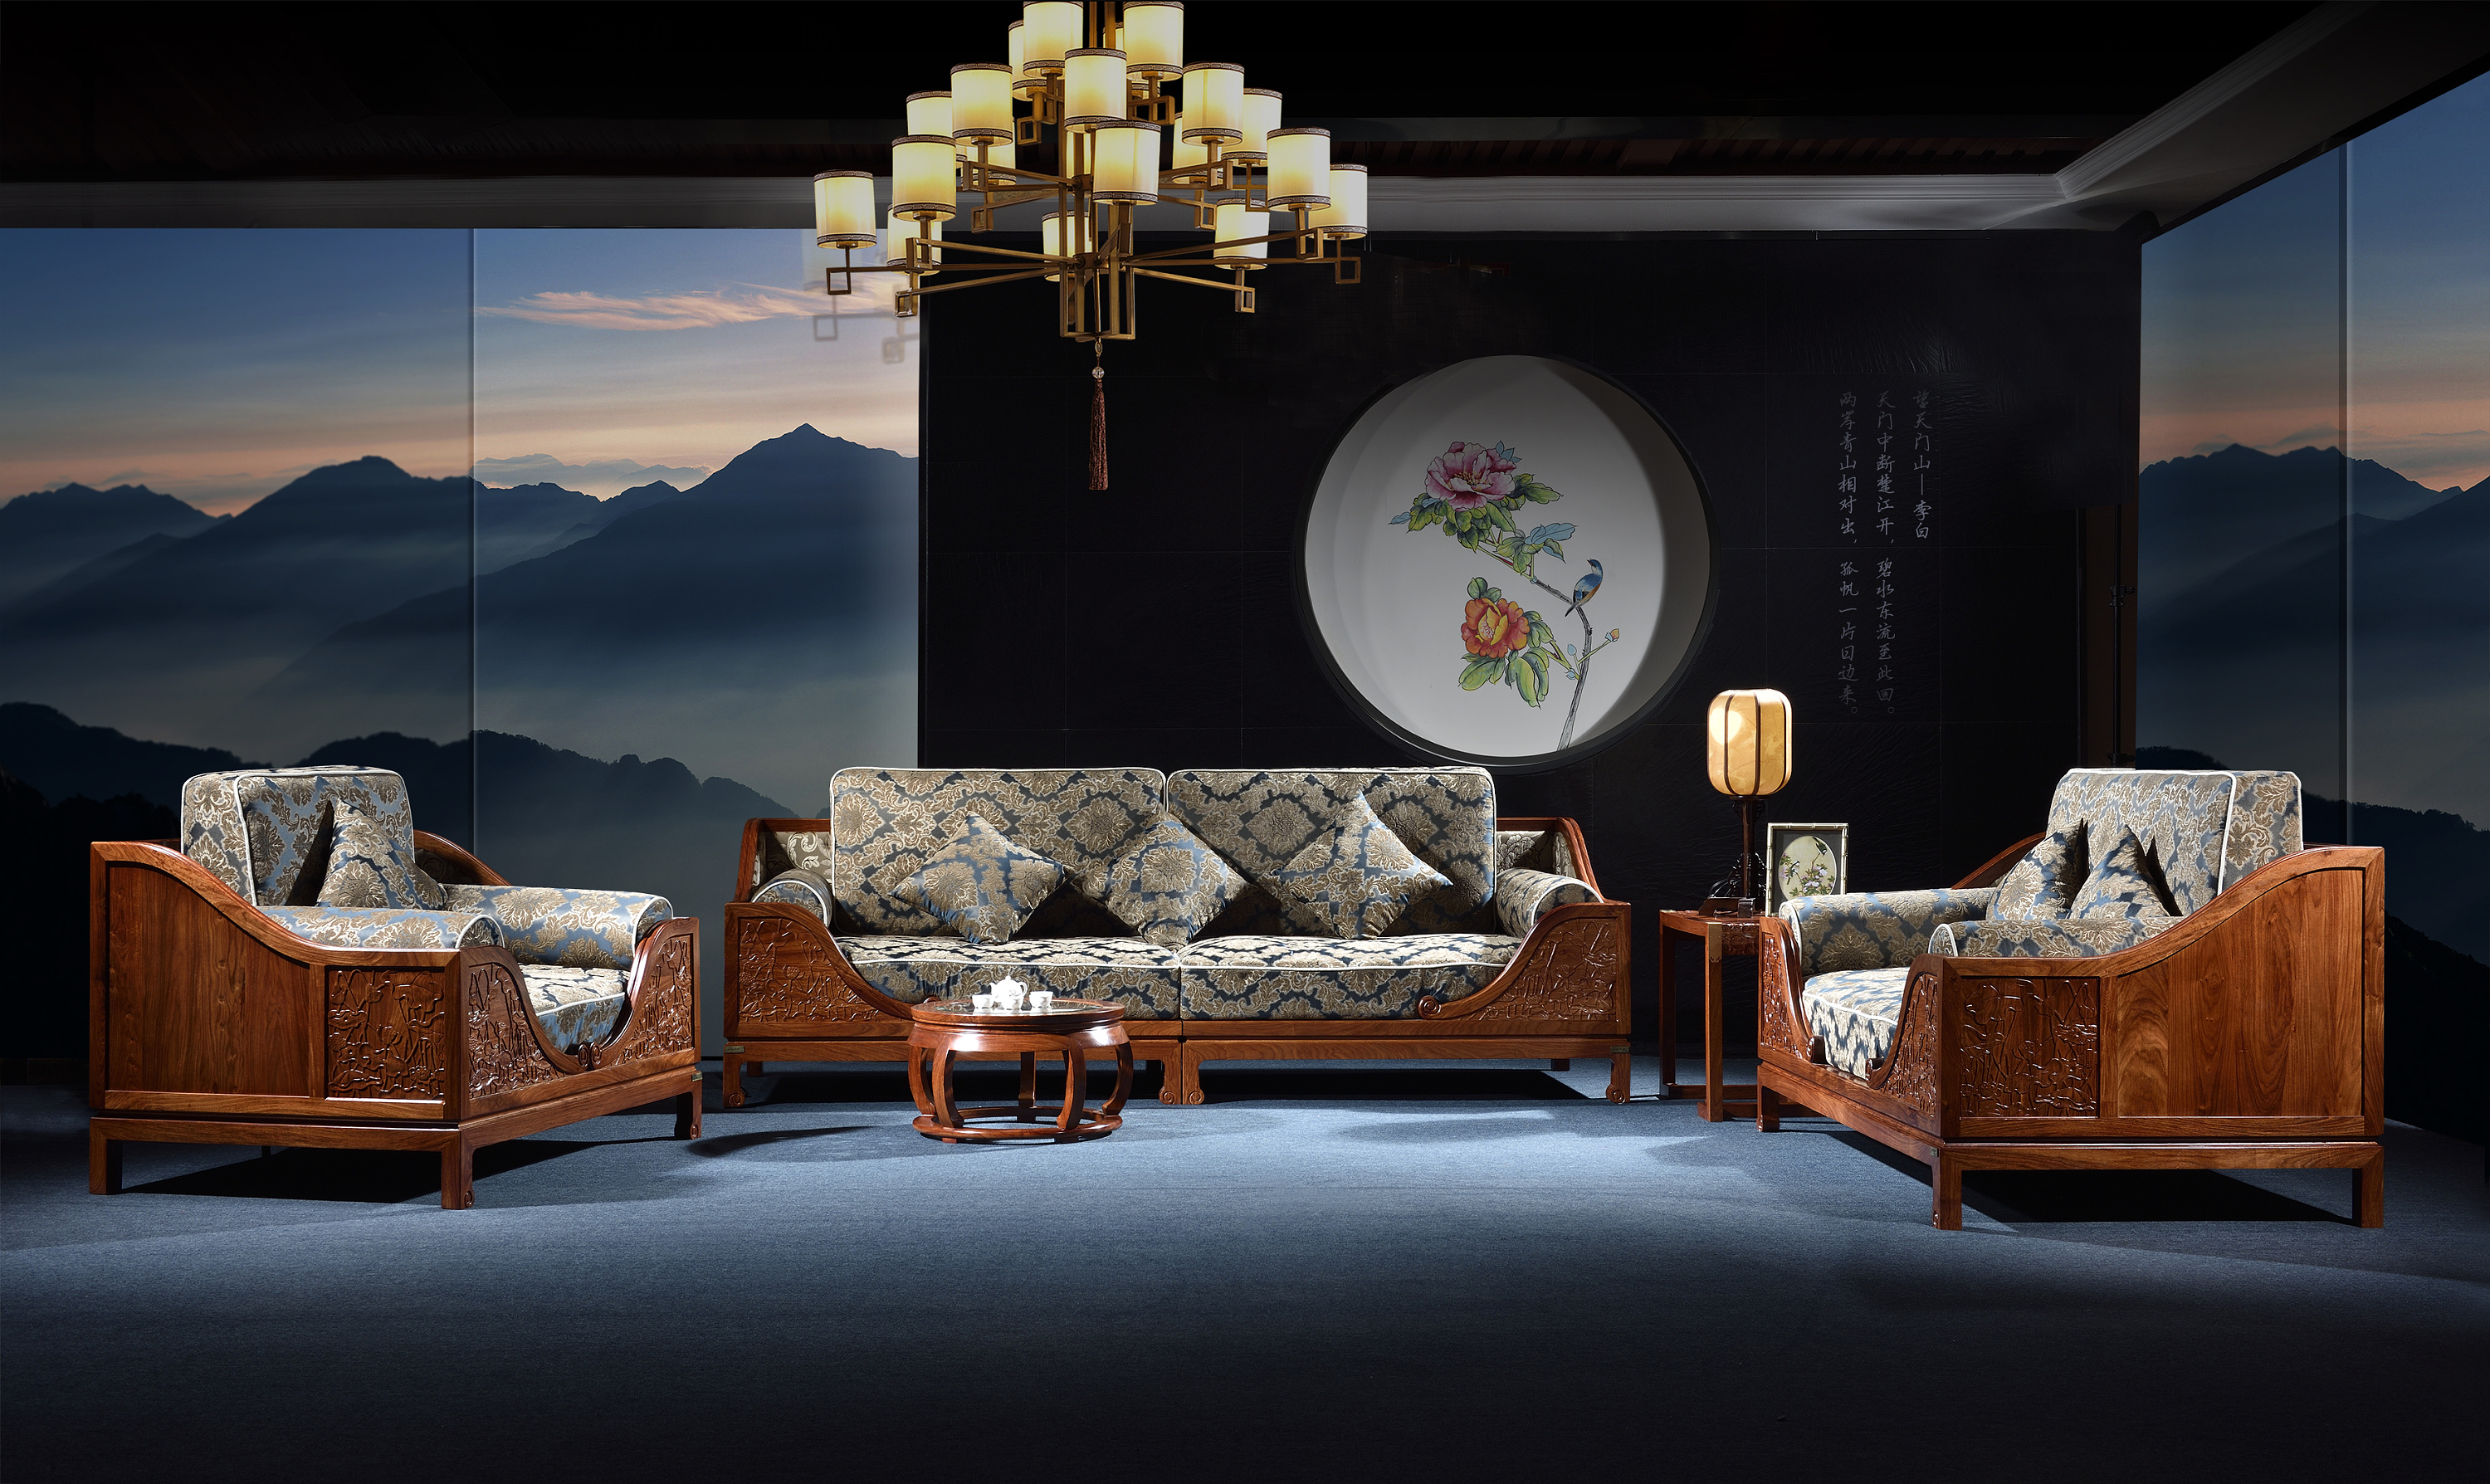 中式实木家具十大名牌图片